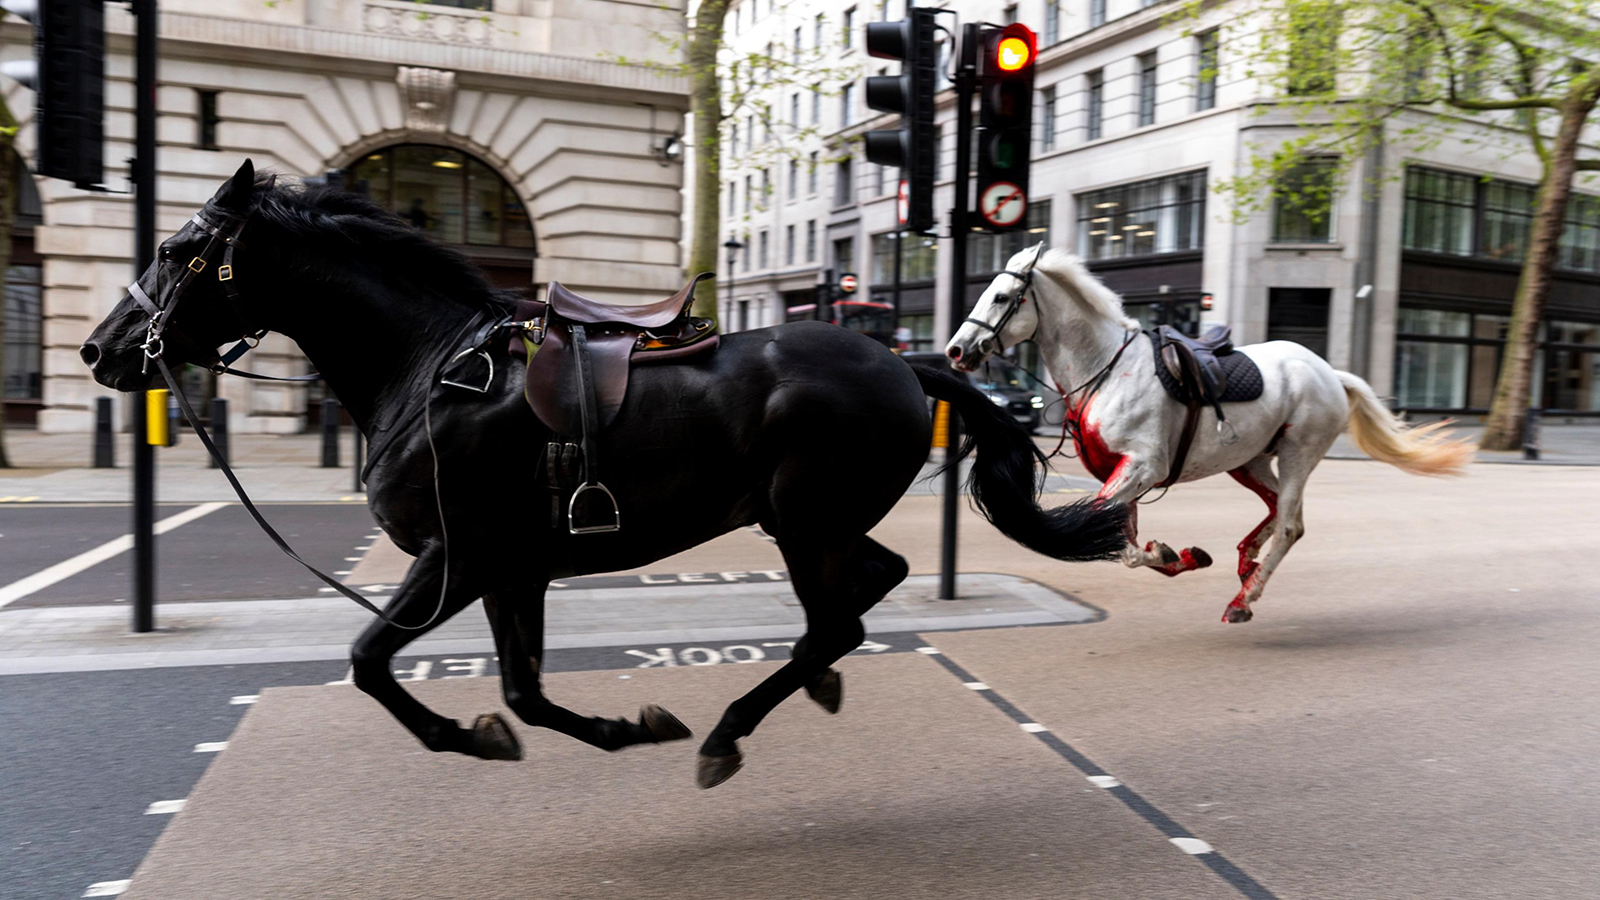 خيول الجيش تشق طريقها في شوارع لندن: فضيحة أم أمر عرضي؟